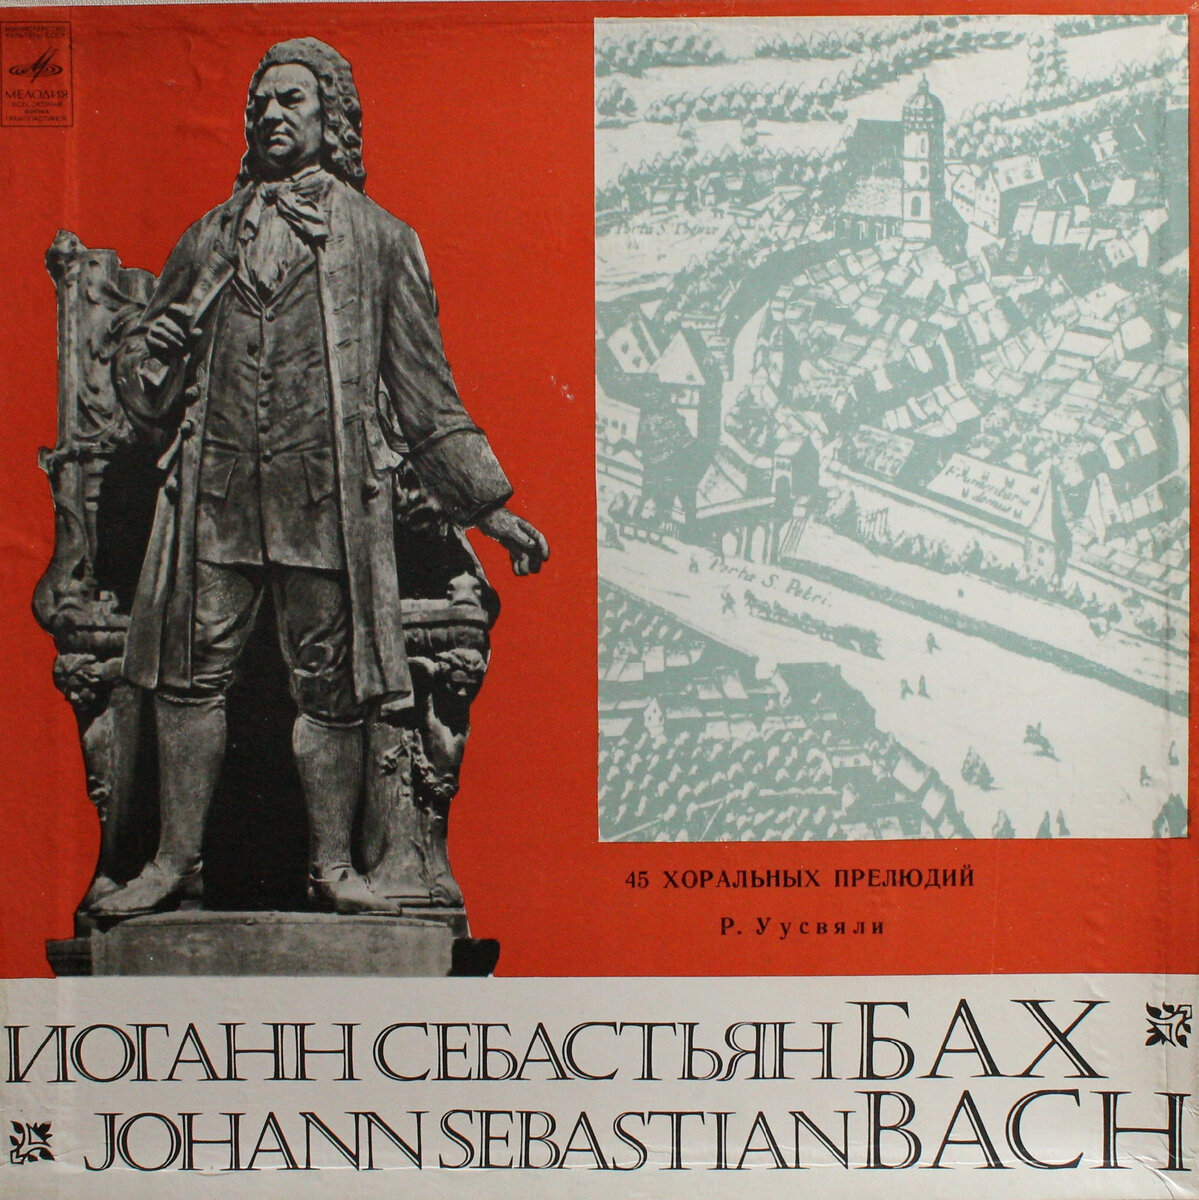  Bach, Иоганн Себастьян Бах, И. С. Бах, Бах. По установившейся в немецкой музыке традиции все 45 прелюдий "Органной книжечки" сгруппированы Бахом согласно важнейшим праздникам церковного года.